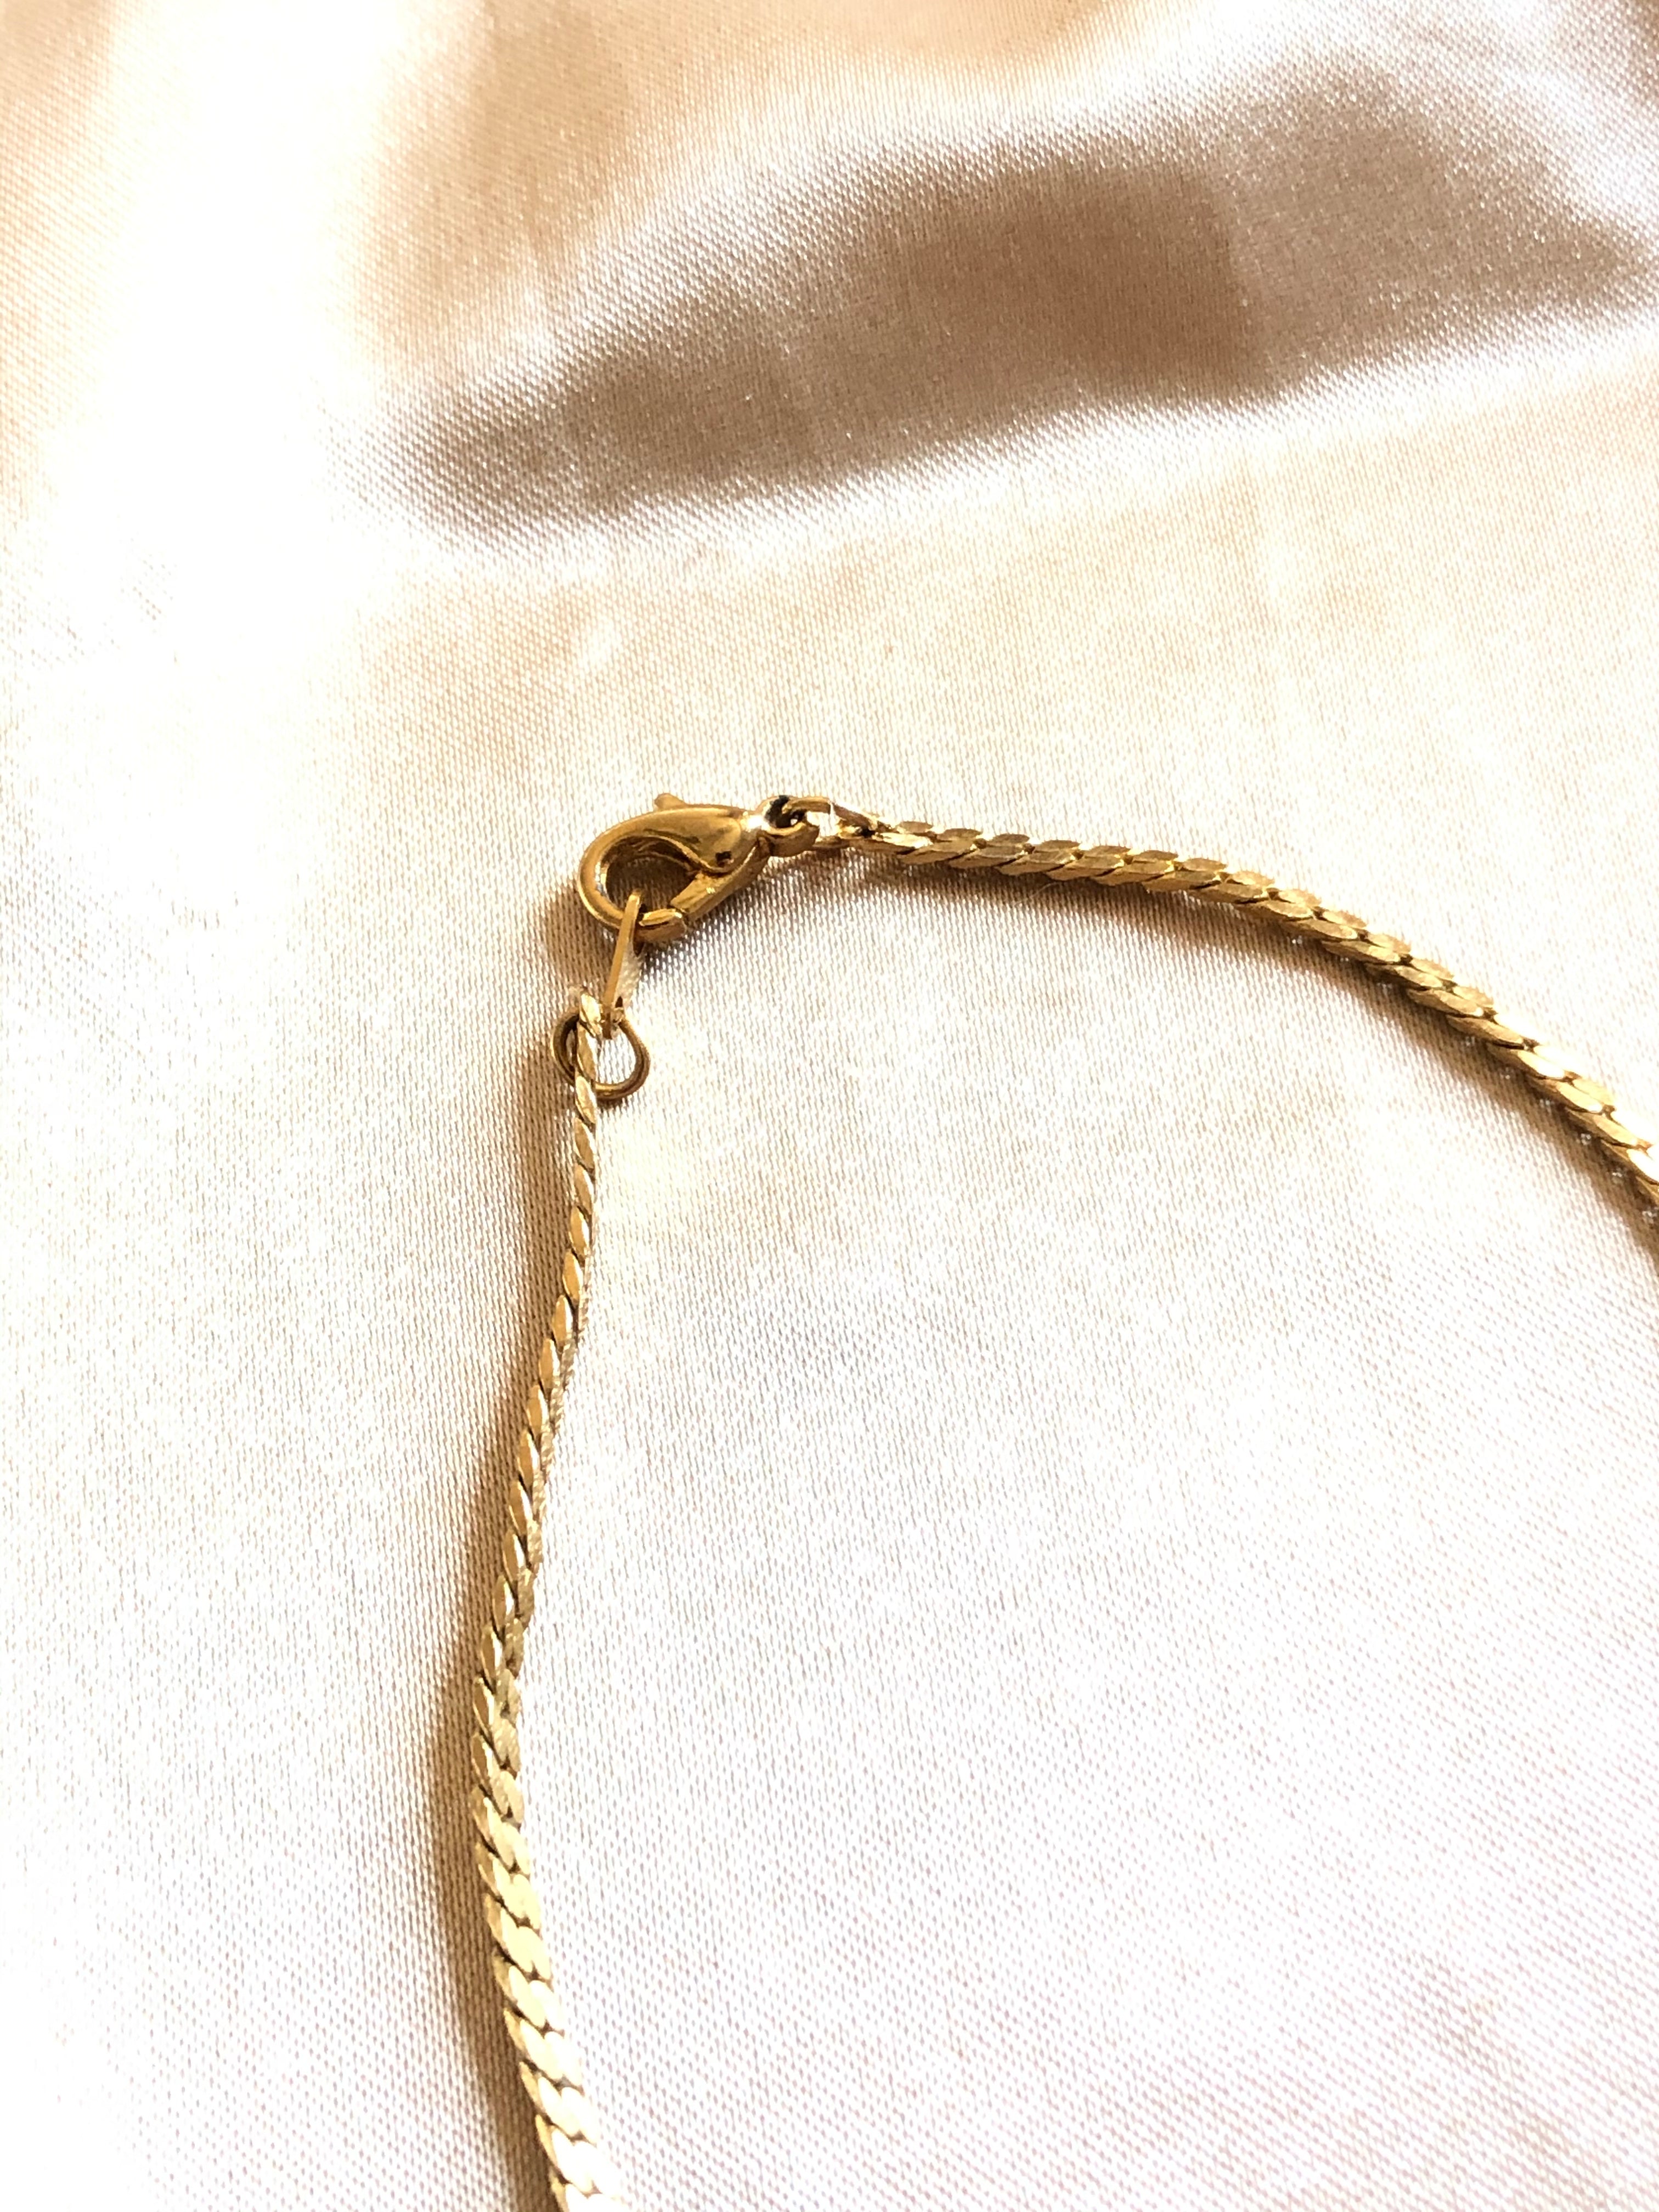 Teardrop Red Garnet Gold V Shape Necklace